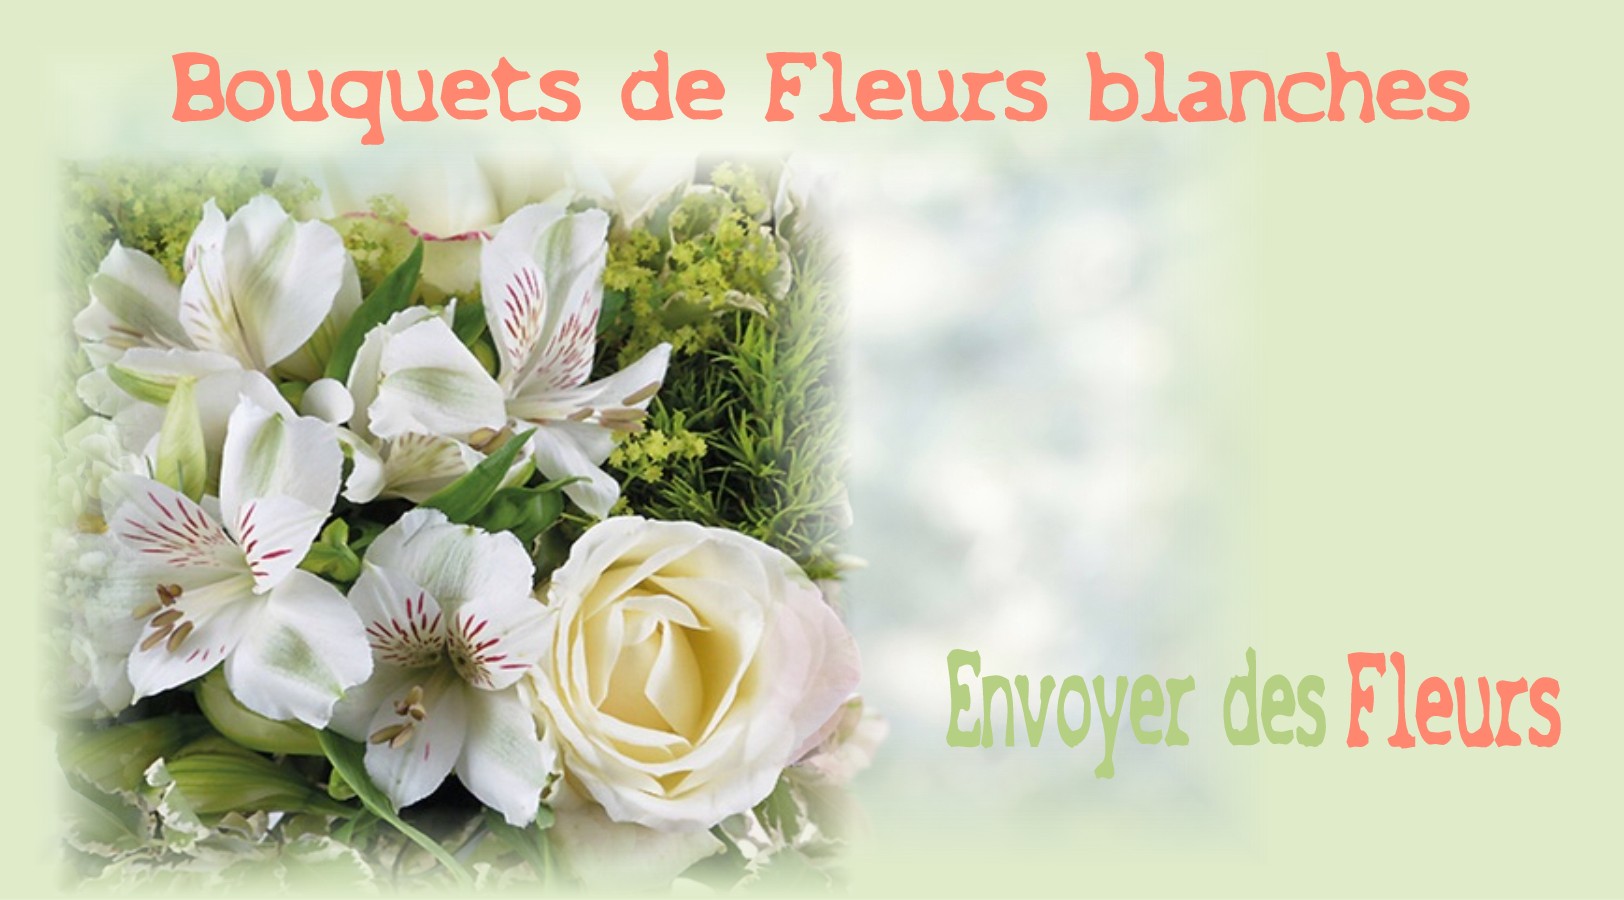 BOUQUETS DE FLEURS BLANCHES -FLEURISTE NICE (06) - ENVOYER DES FLEURS